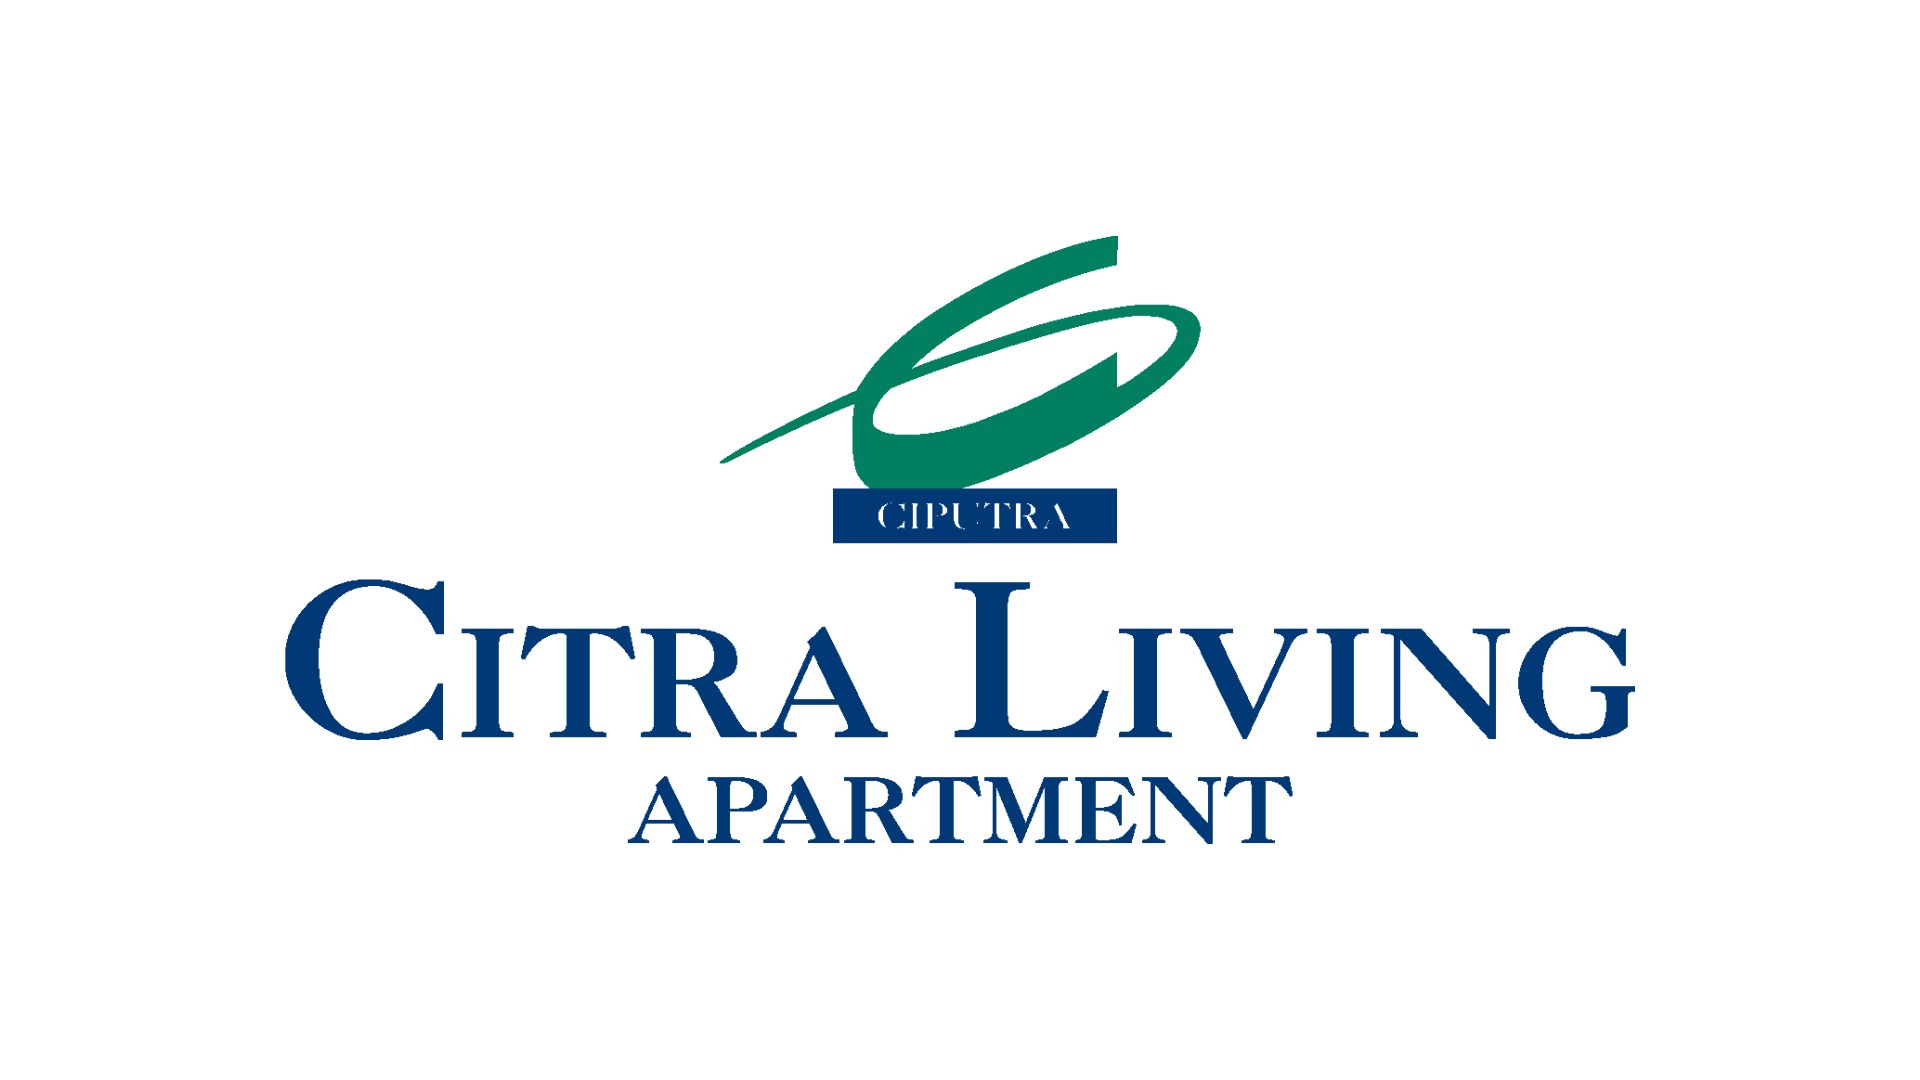 Vote Citra Living Apartment